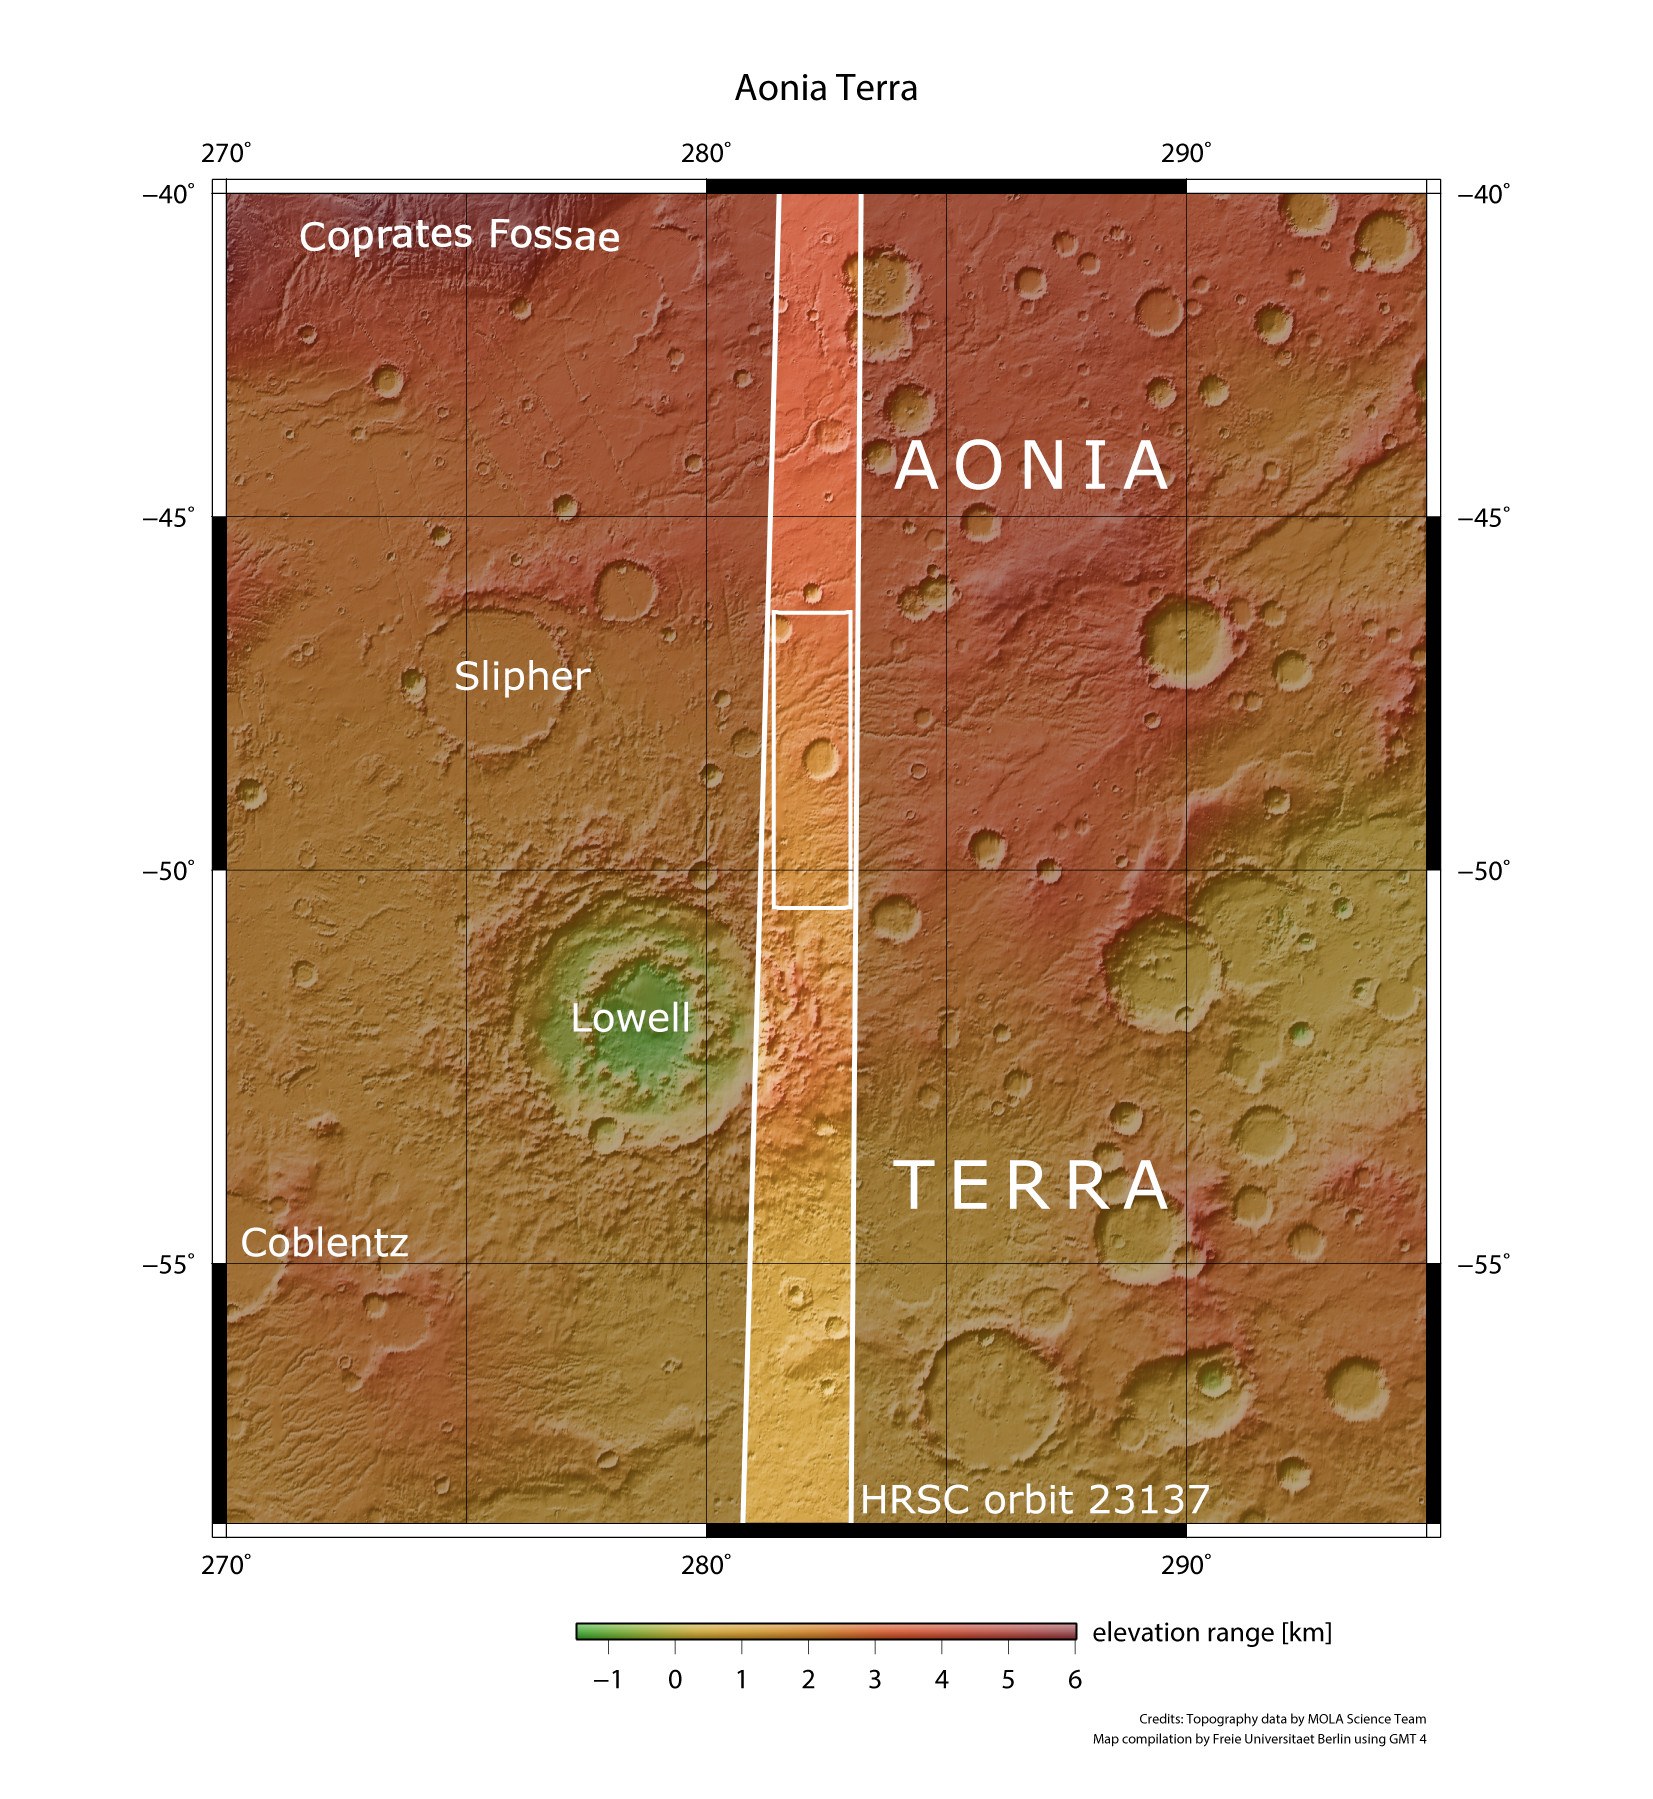 Die alte Hochlandregion Aonia Terra im Süden des Mars